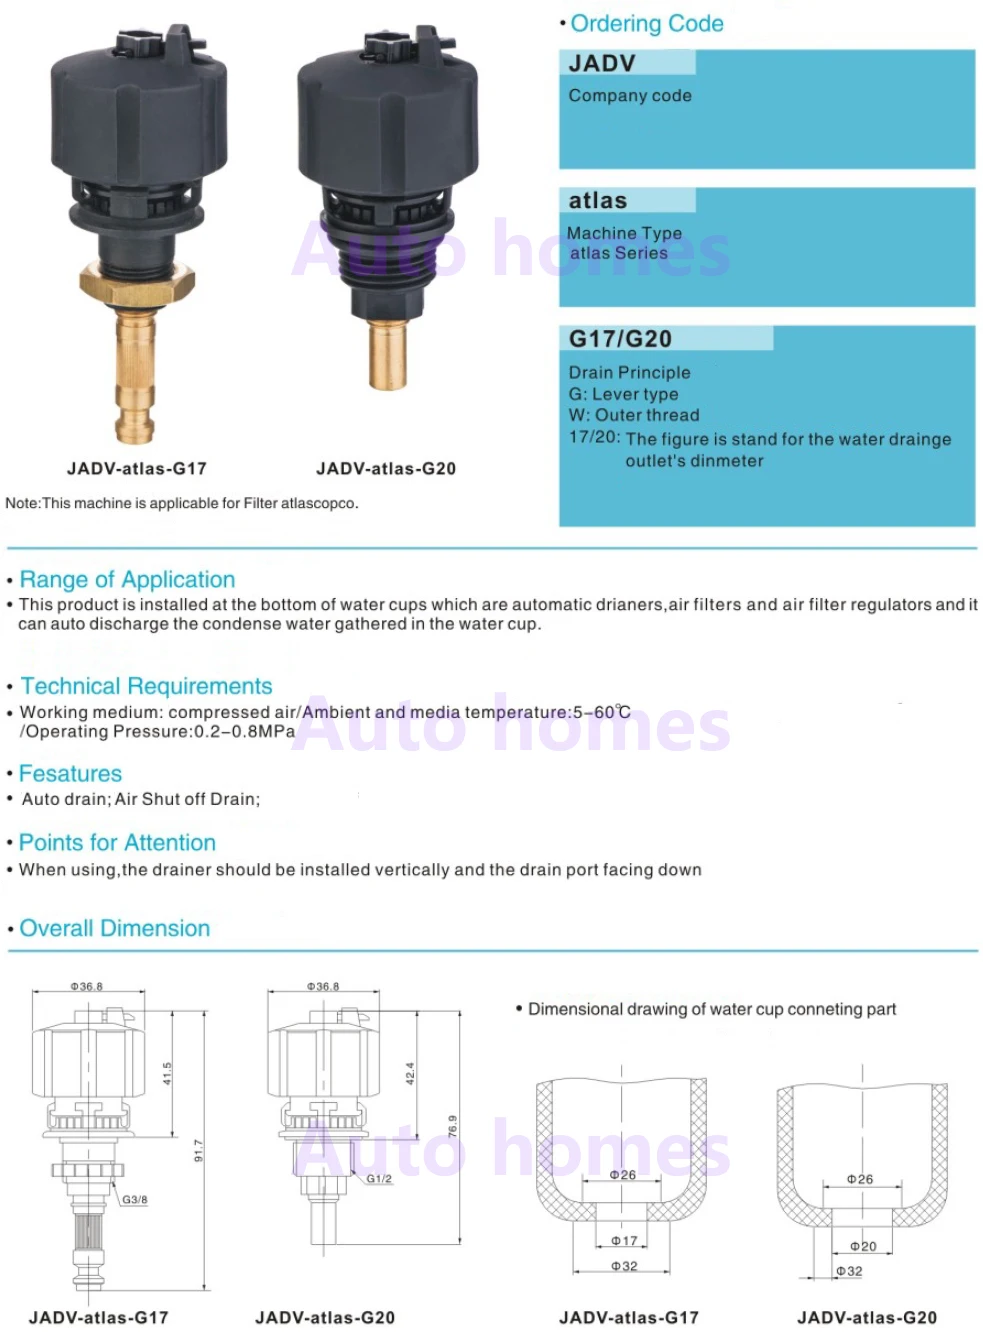 Автоматический дренажный клапан 2901056300 atlas copco автоматический сливной клапан для воздушного компрессора JADV-atlas-G17